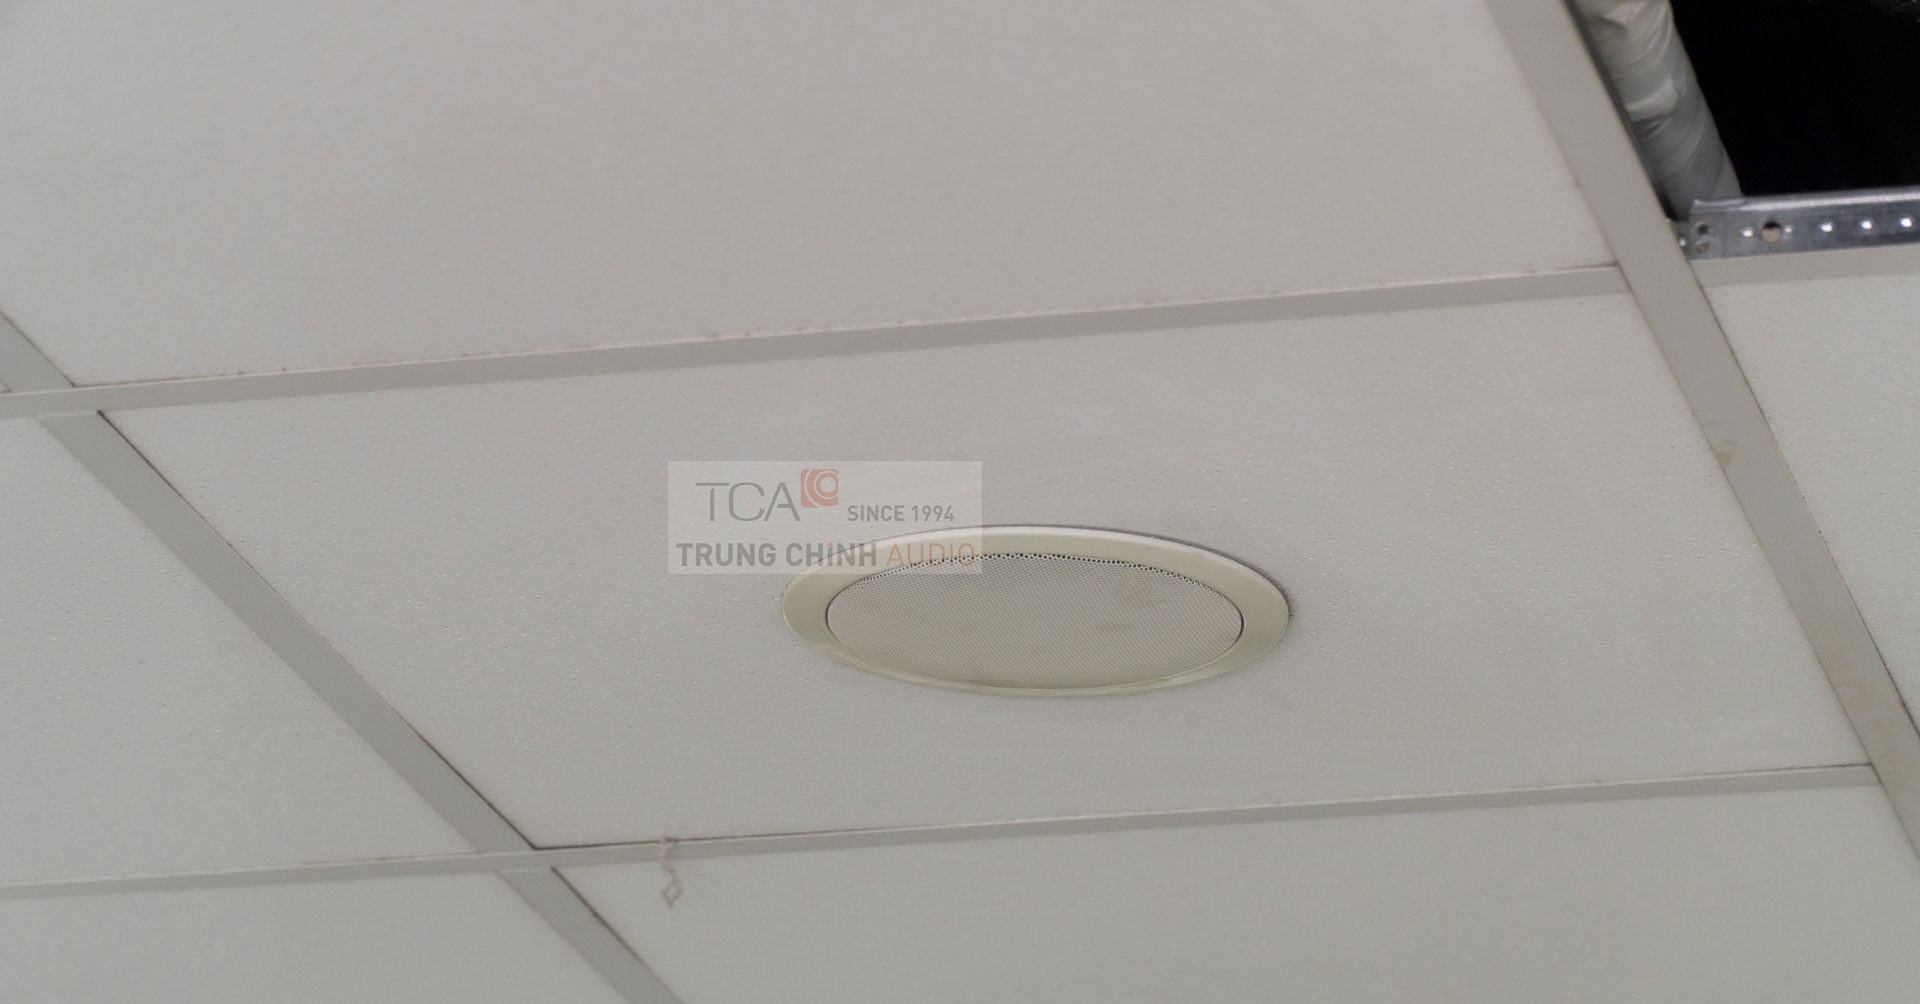 Hệ thống âm thanh TOA cho văn phòng công ty bảo hiểm Hanwha Life, TP. HCM